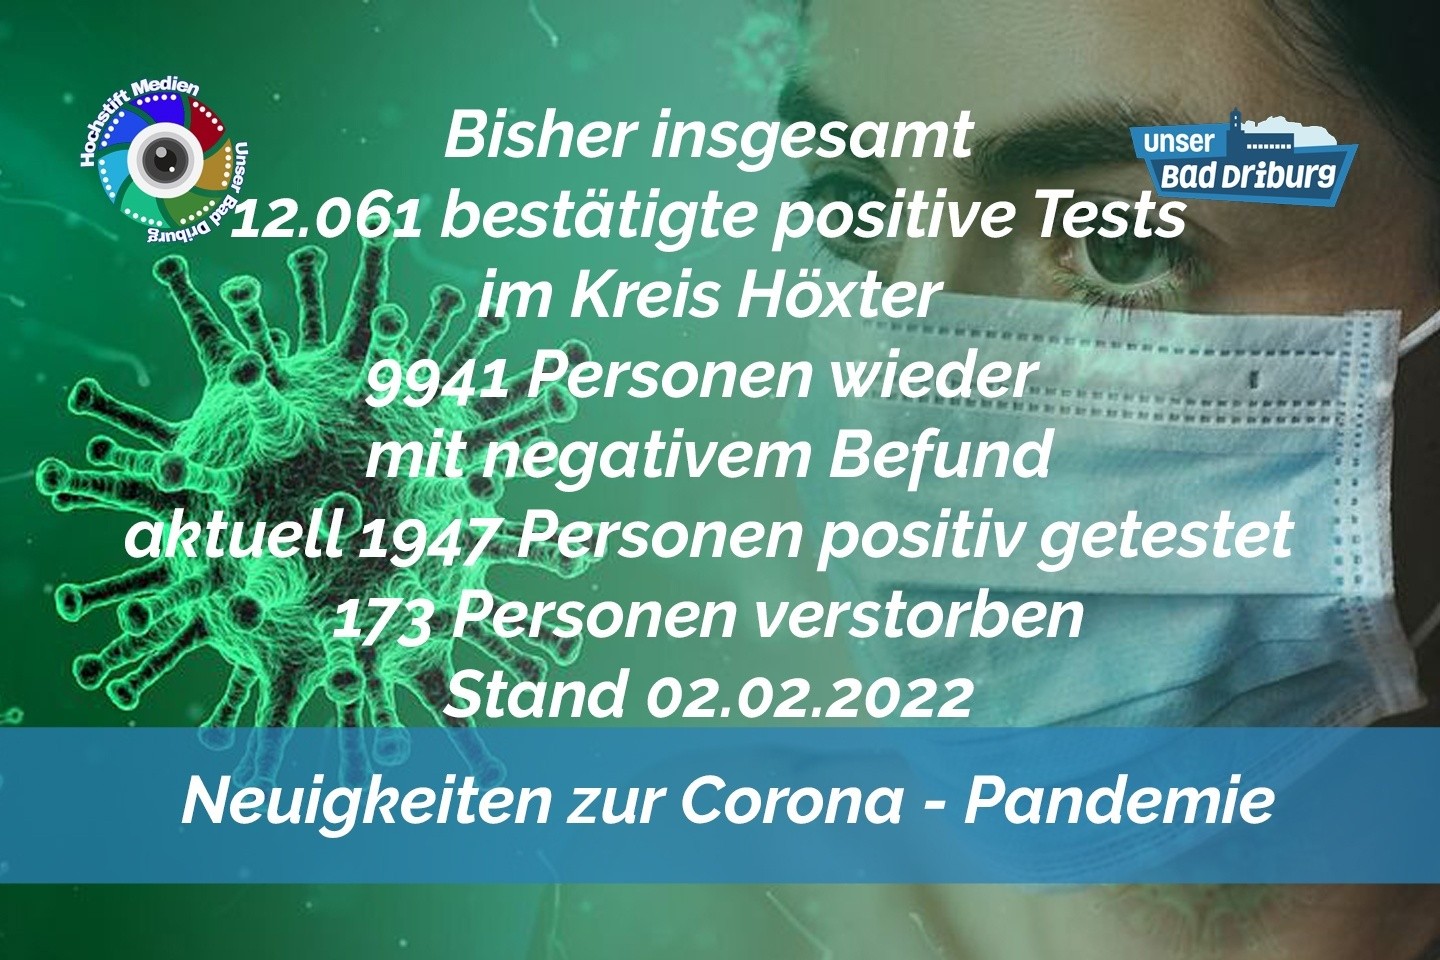 Update 02. Februar 2022: 270 weitere amtlich positive Tests im Kreis Höxter